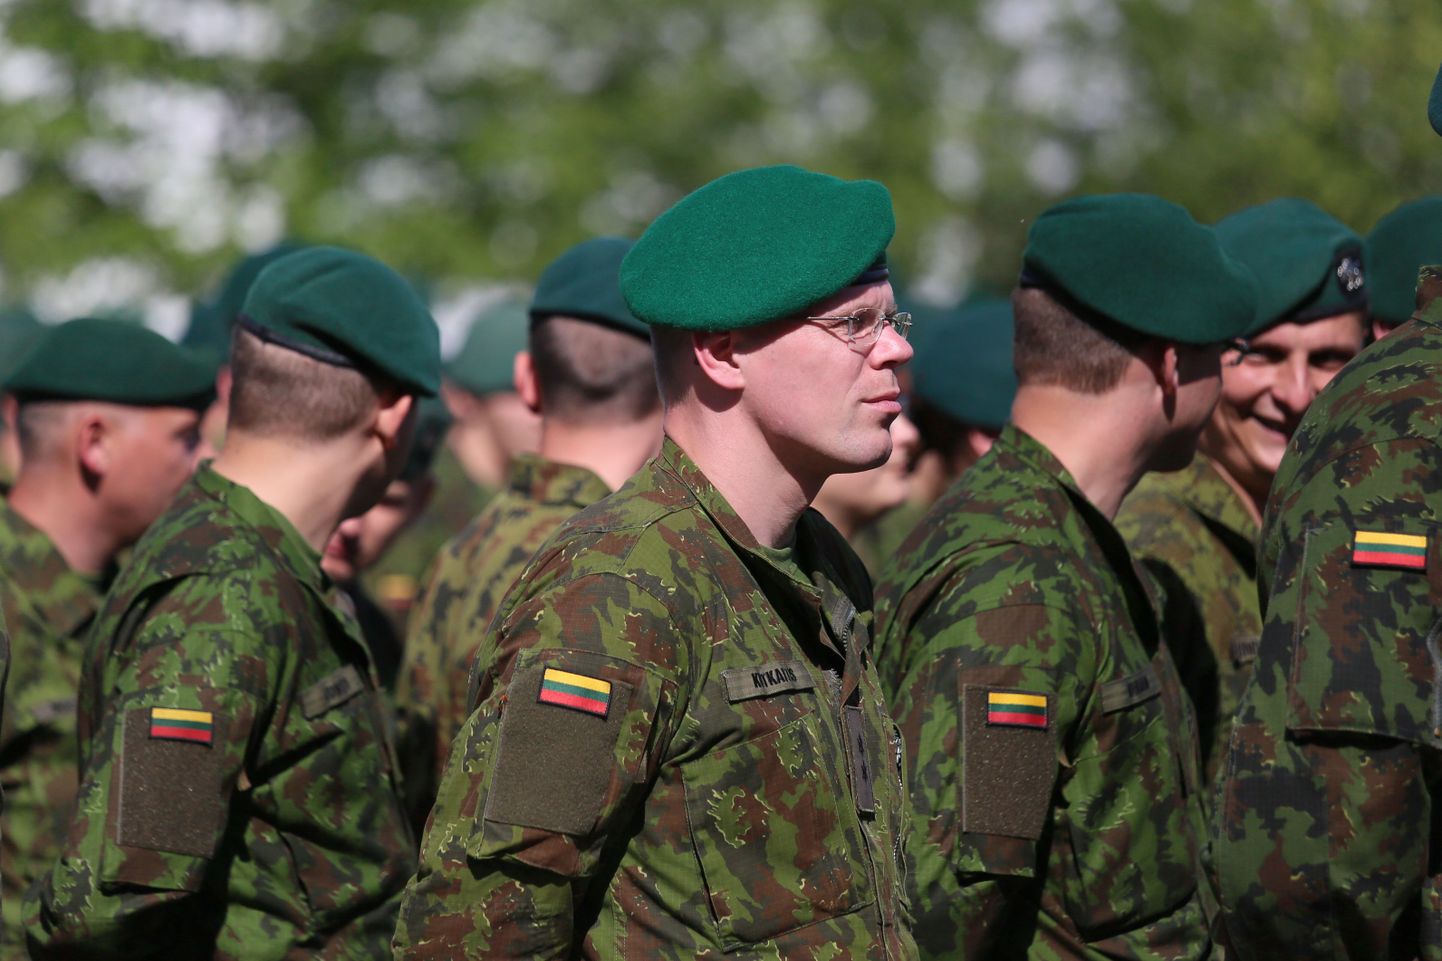 Leedu sõdurid